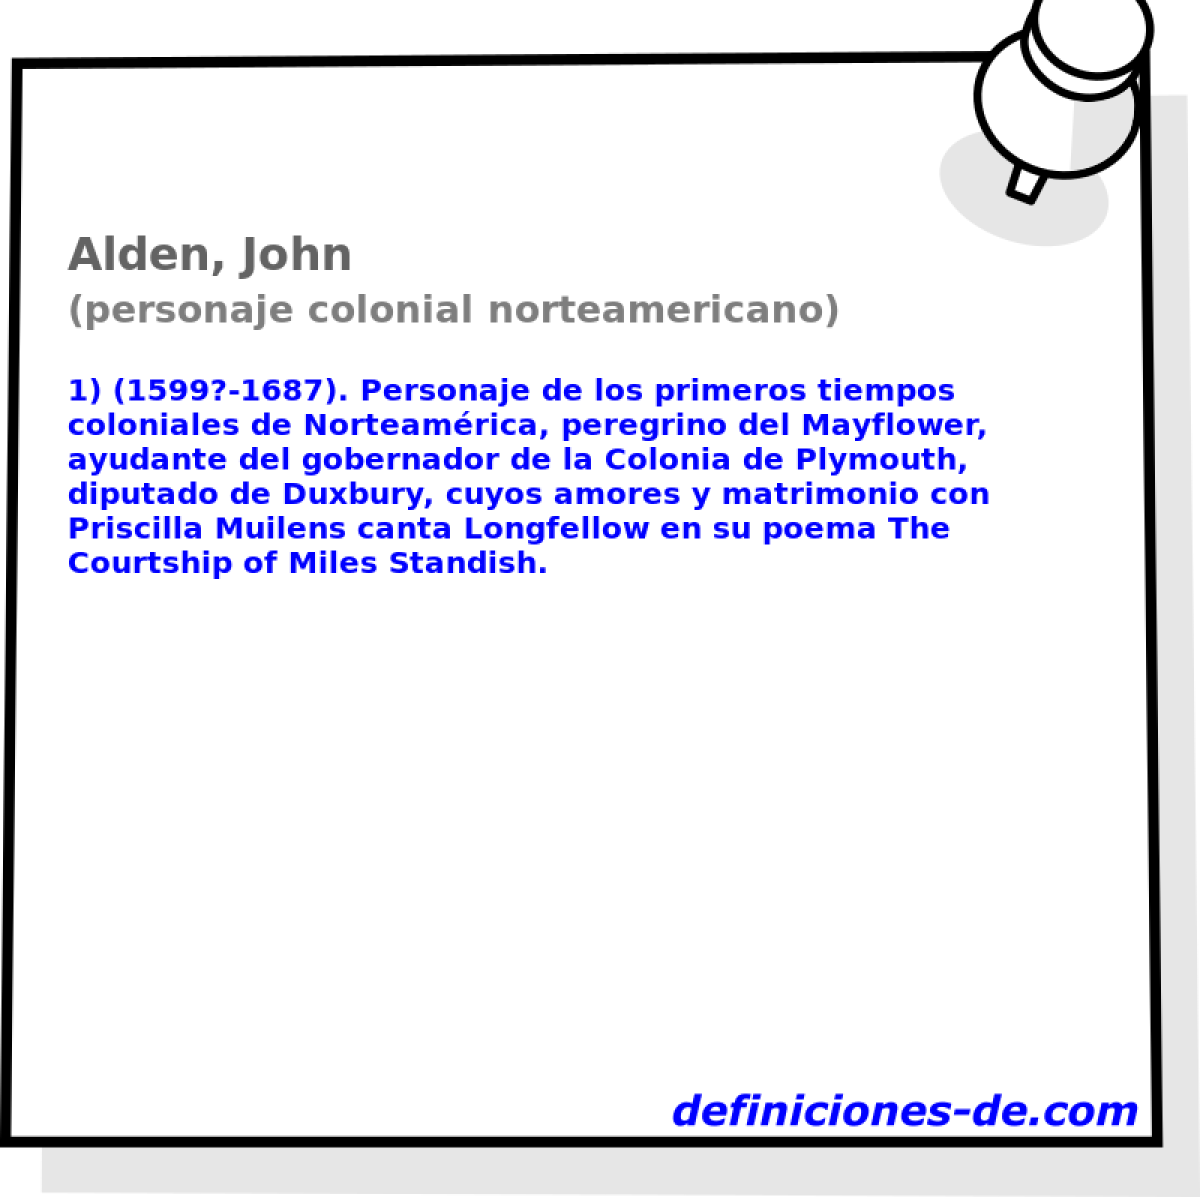 Alden, John (personaje colonial norteamericano)